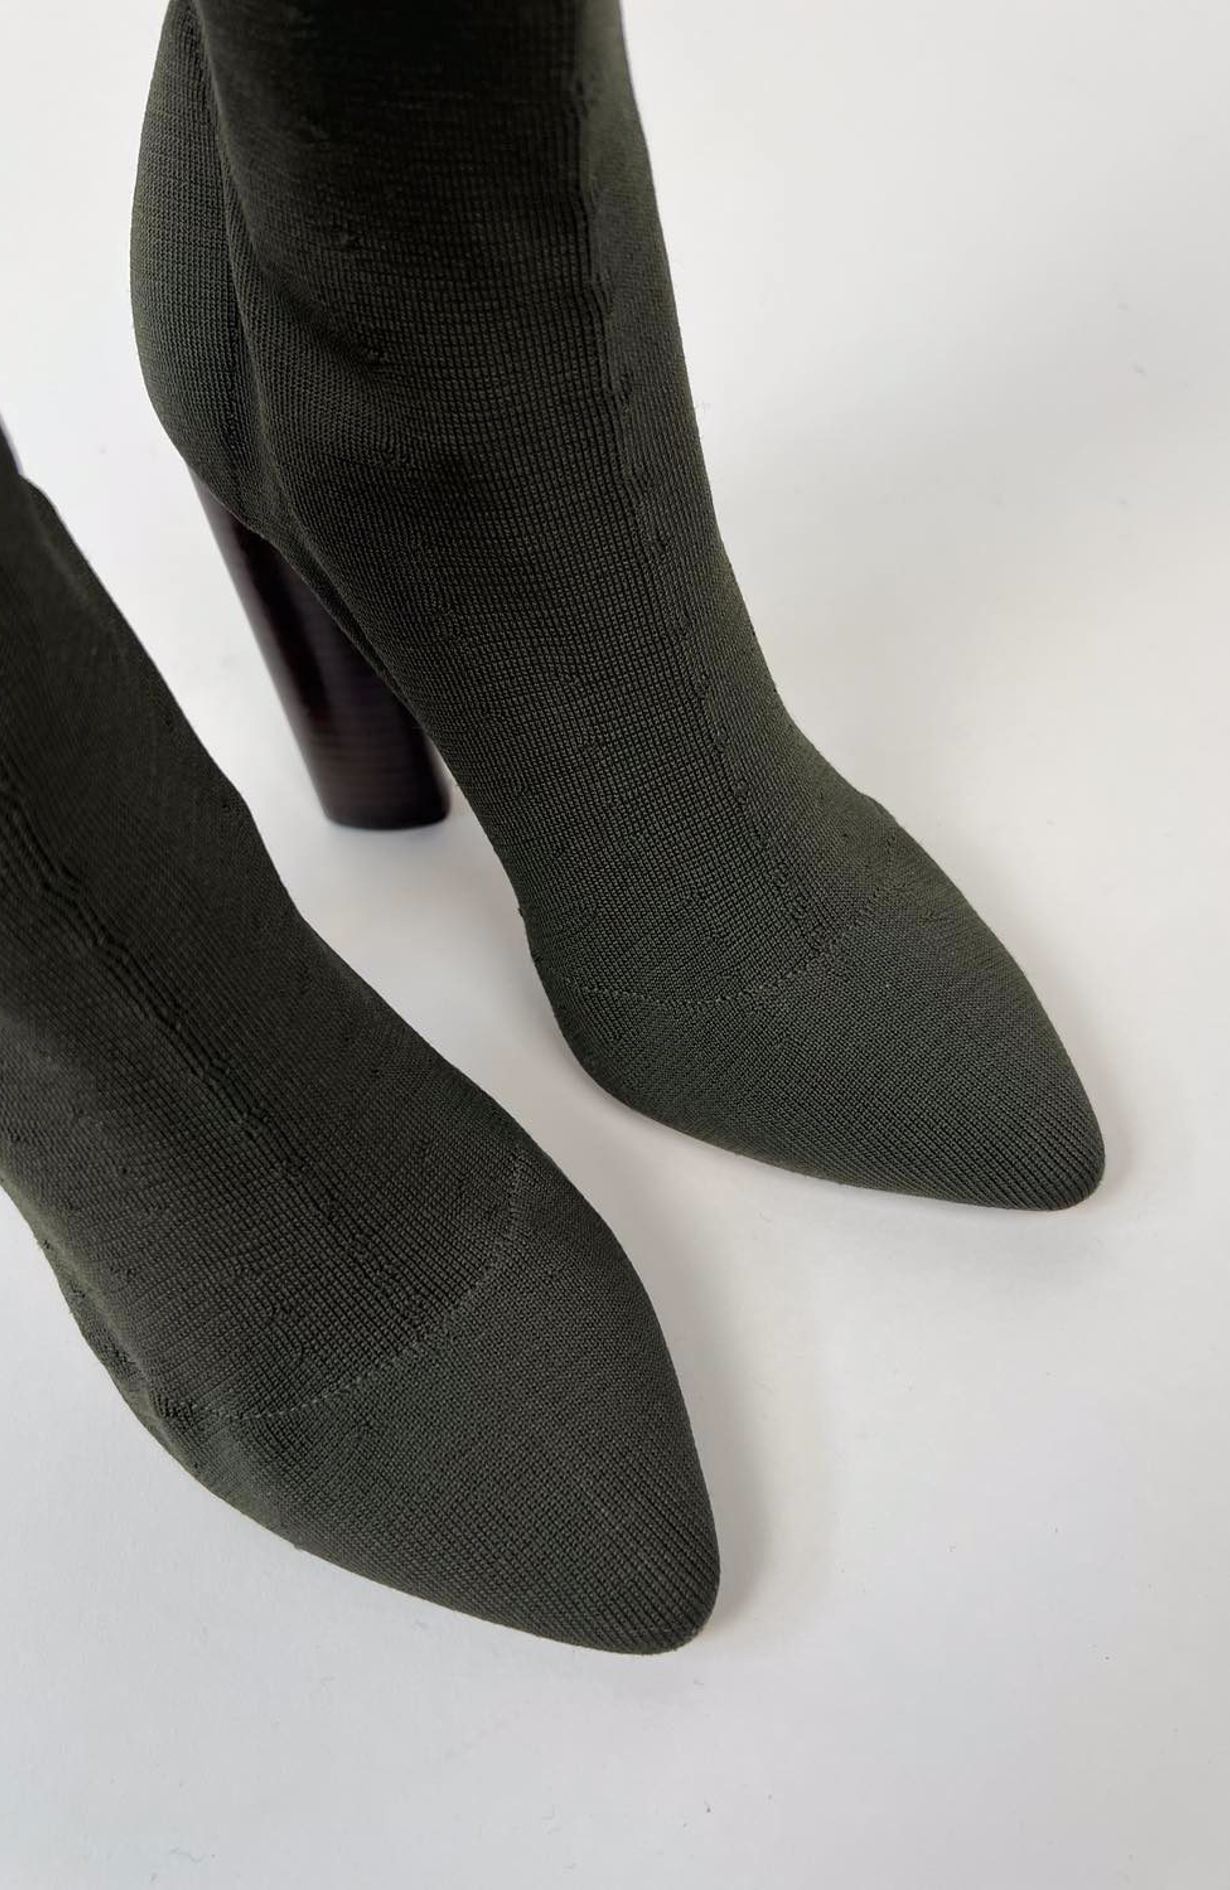 Yeezy Heels Sock Boots Season 2 size 37